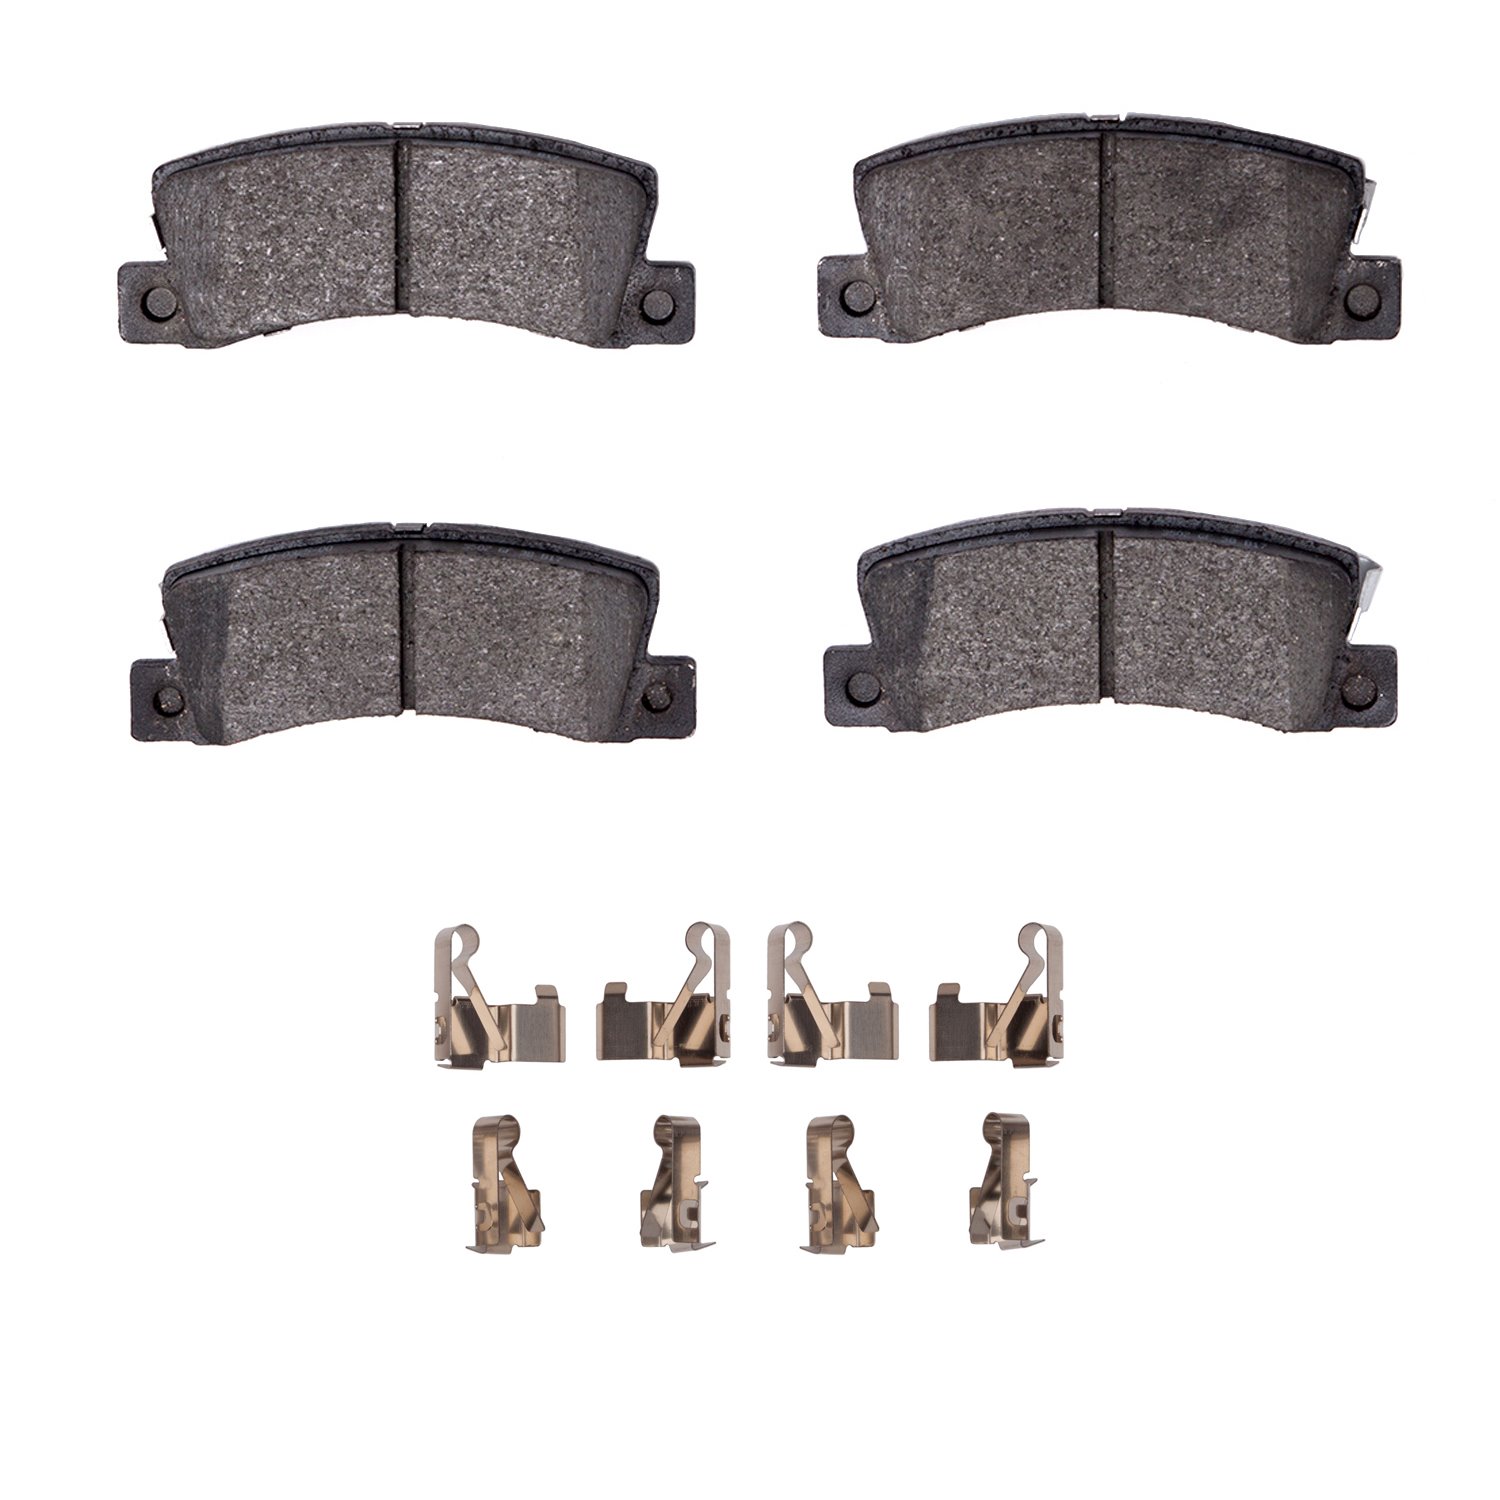 Ceramic Brake Pads & Hardware Kit, 1990-2003 Lexus/Toyota/Scion, Position: Rear